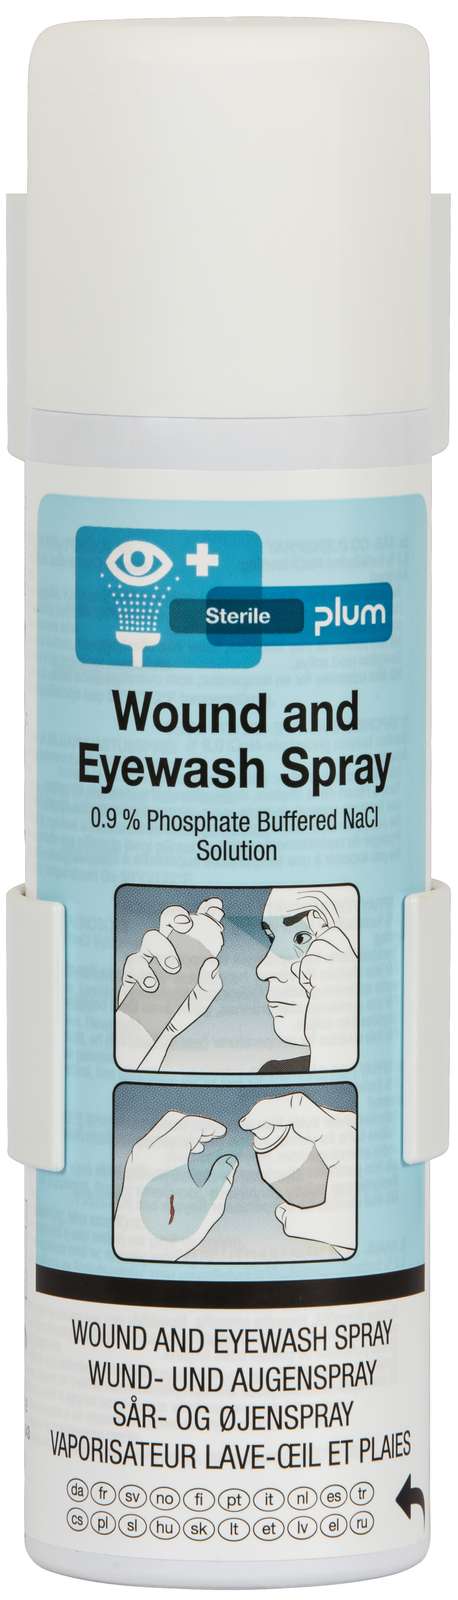 4556 Plum Wound and Eyewash Spray Buffer 200 ml incl. wall bracket 20231127